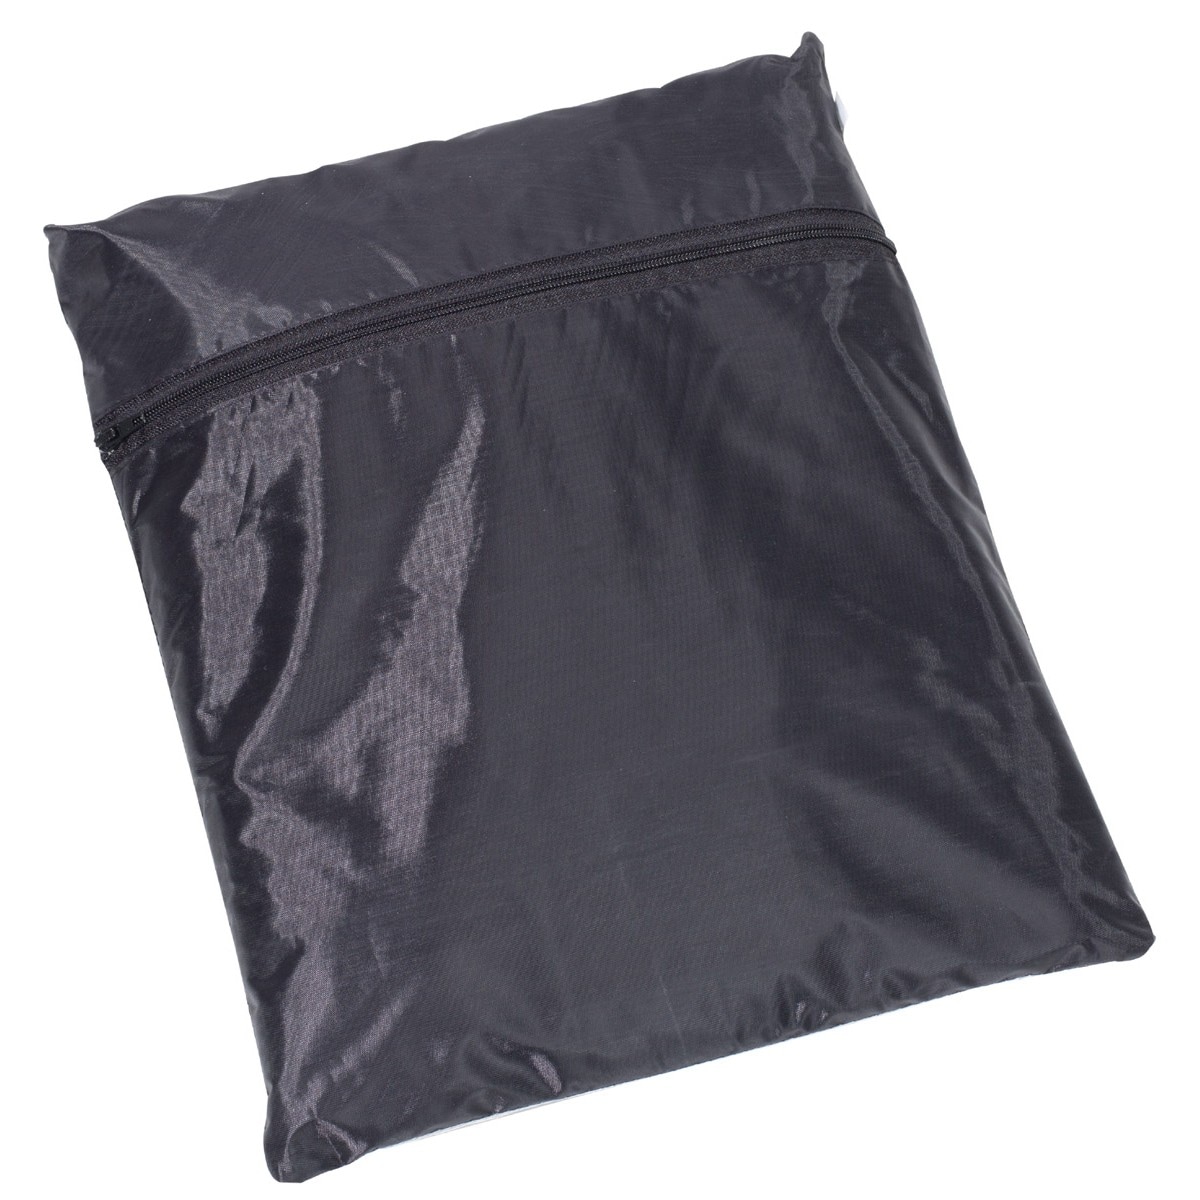 Komplet przeciwdeszczowy MFH kurtka+spodnie - Black